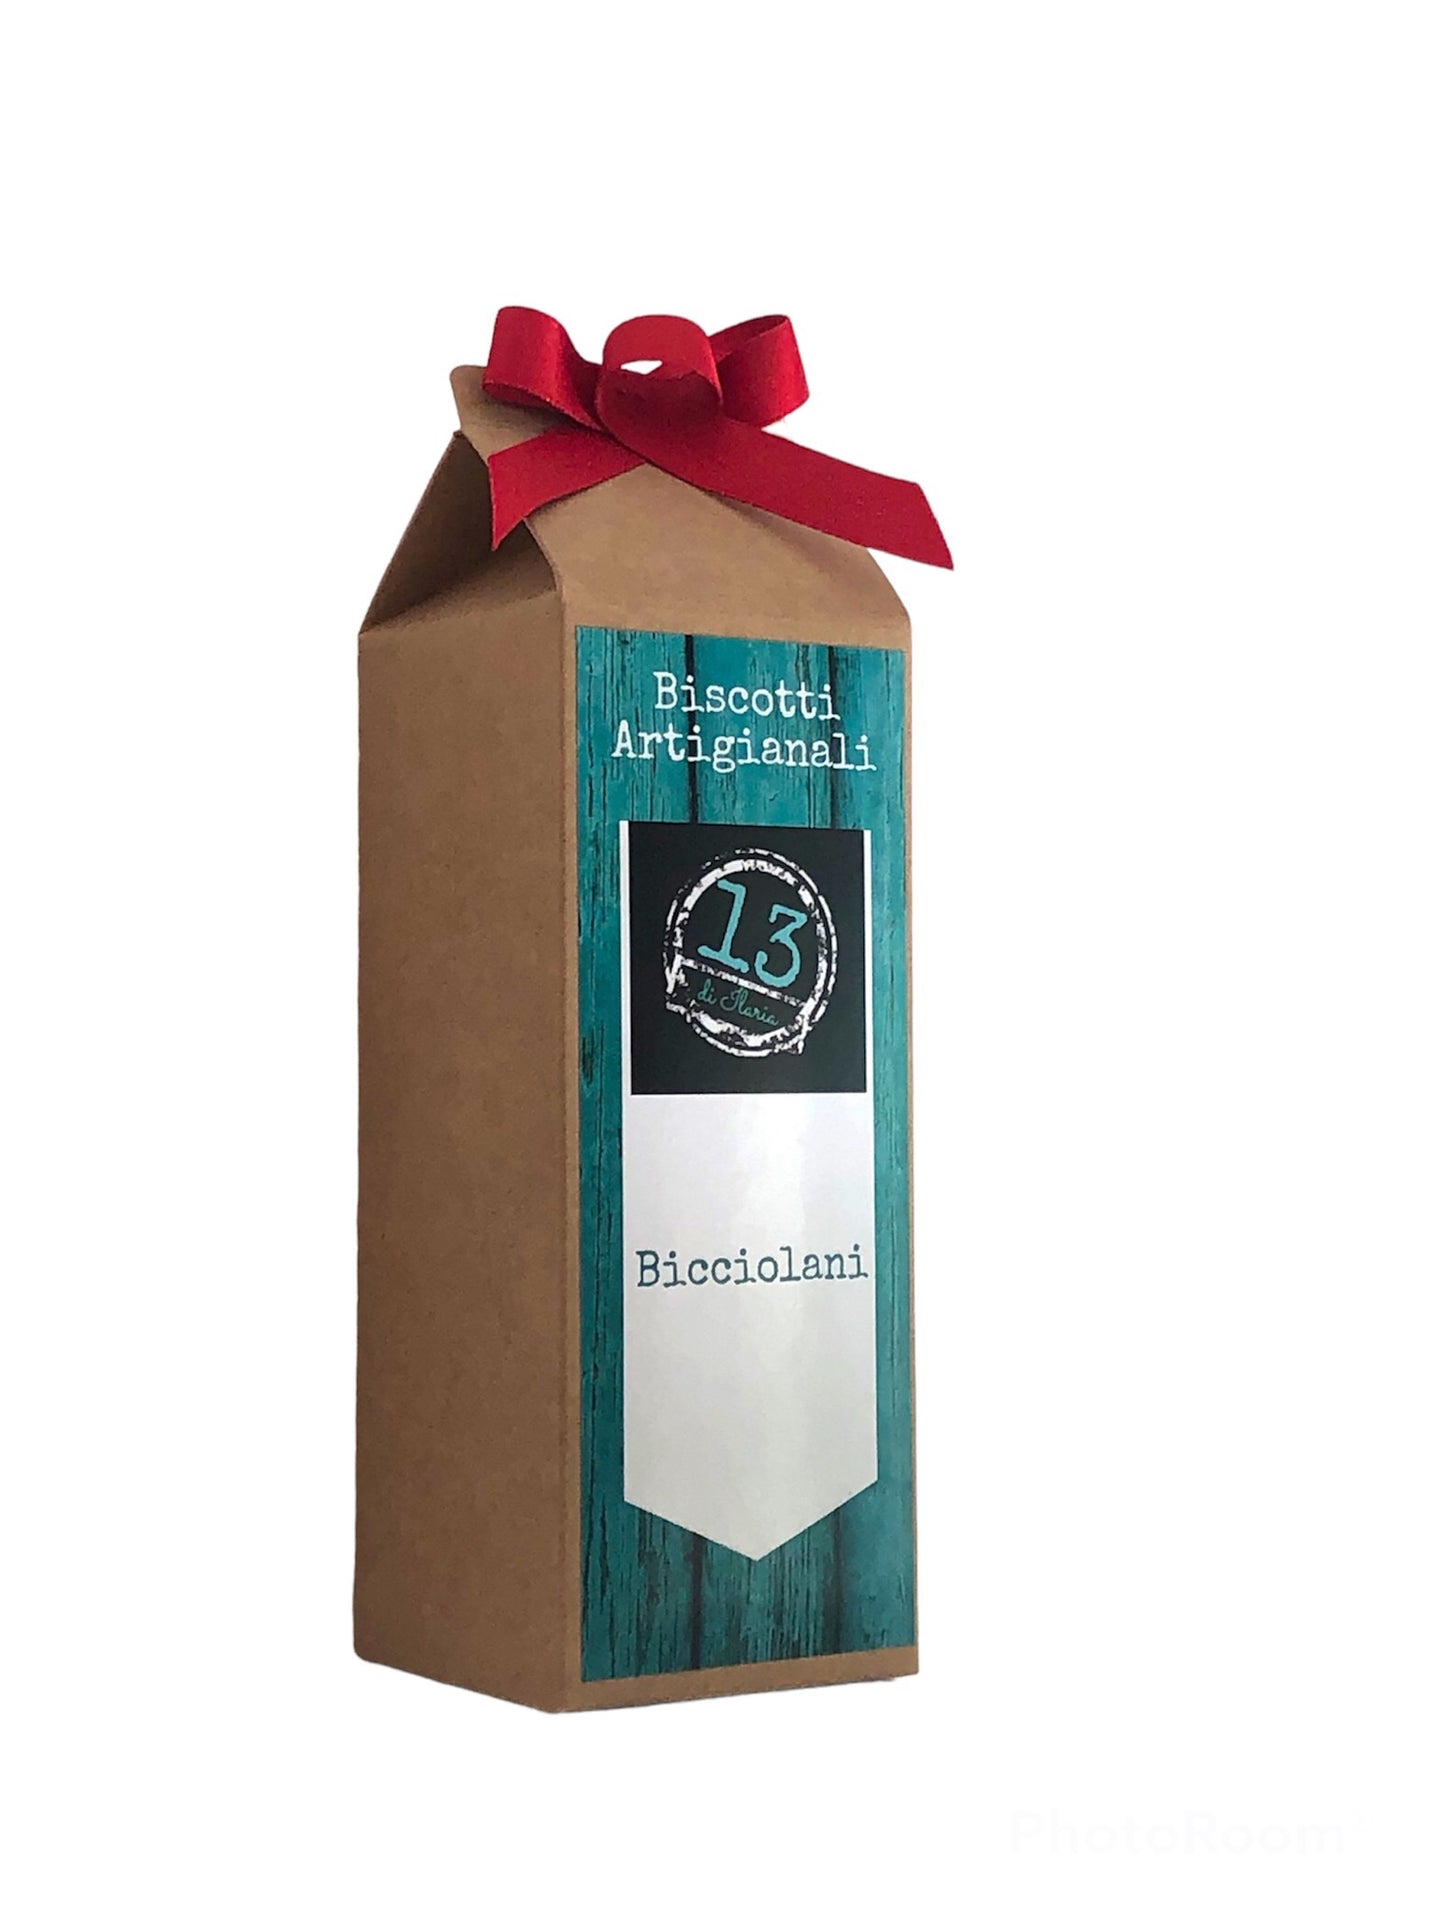 Idea Regalo per Natale - Confezione Contenente un pacco di Biscotti Artigianali (in 4 varianti) prodotti da Biscottificio Piemontese